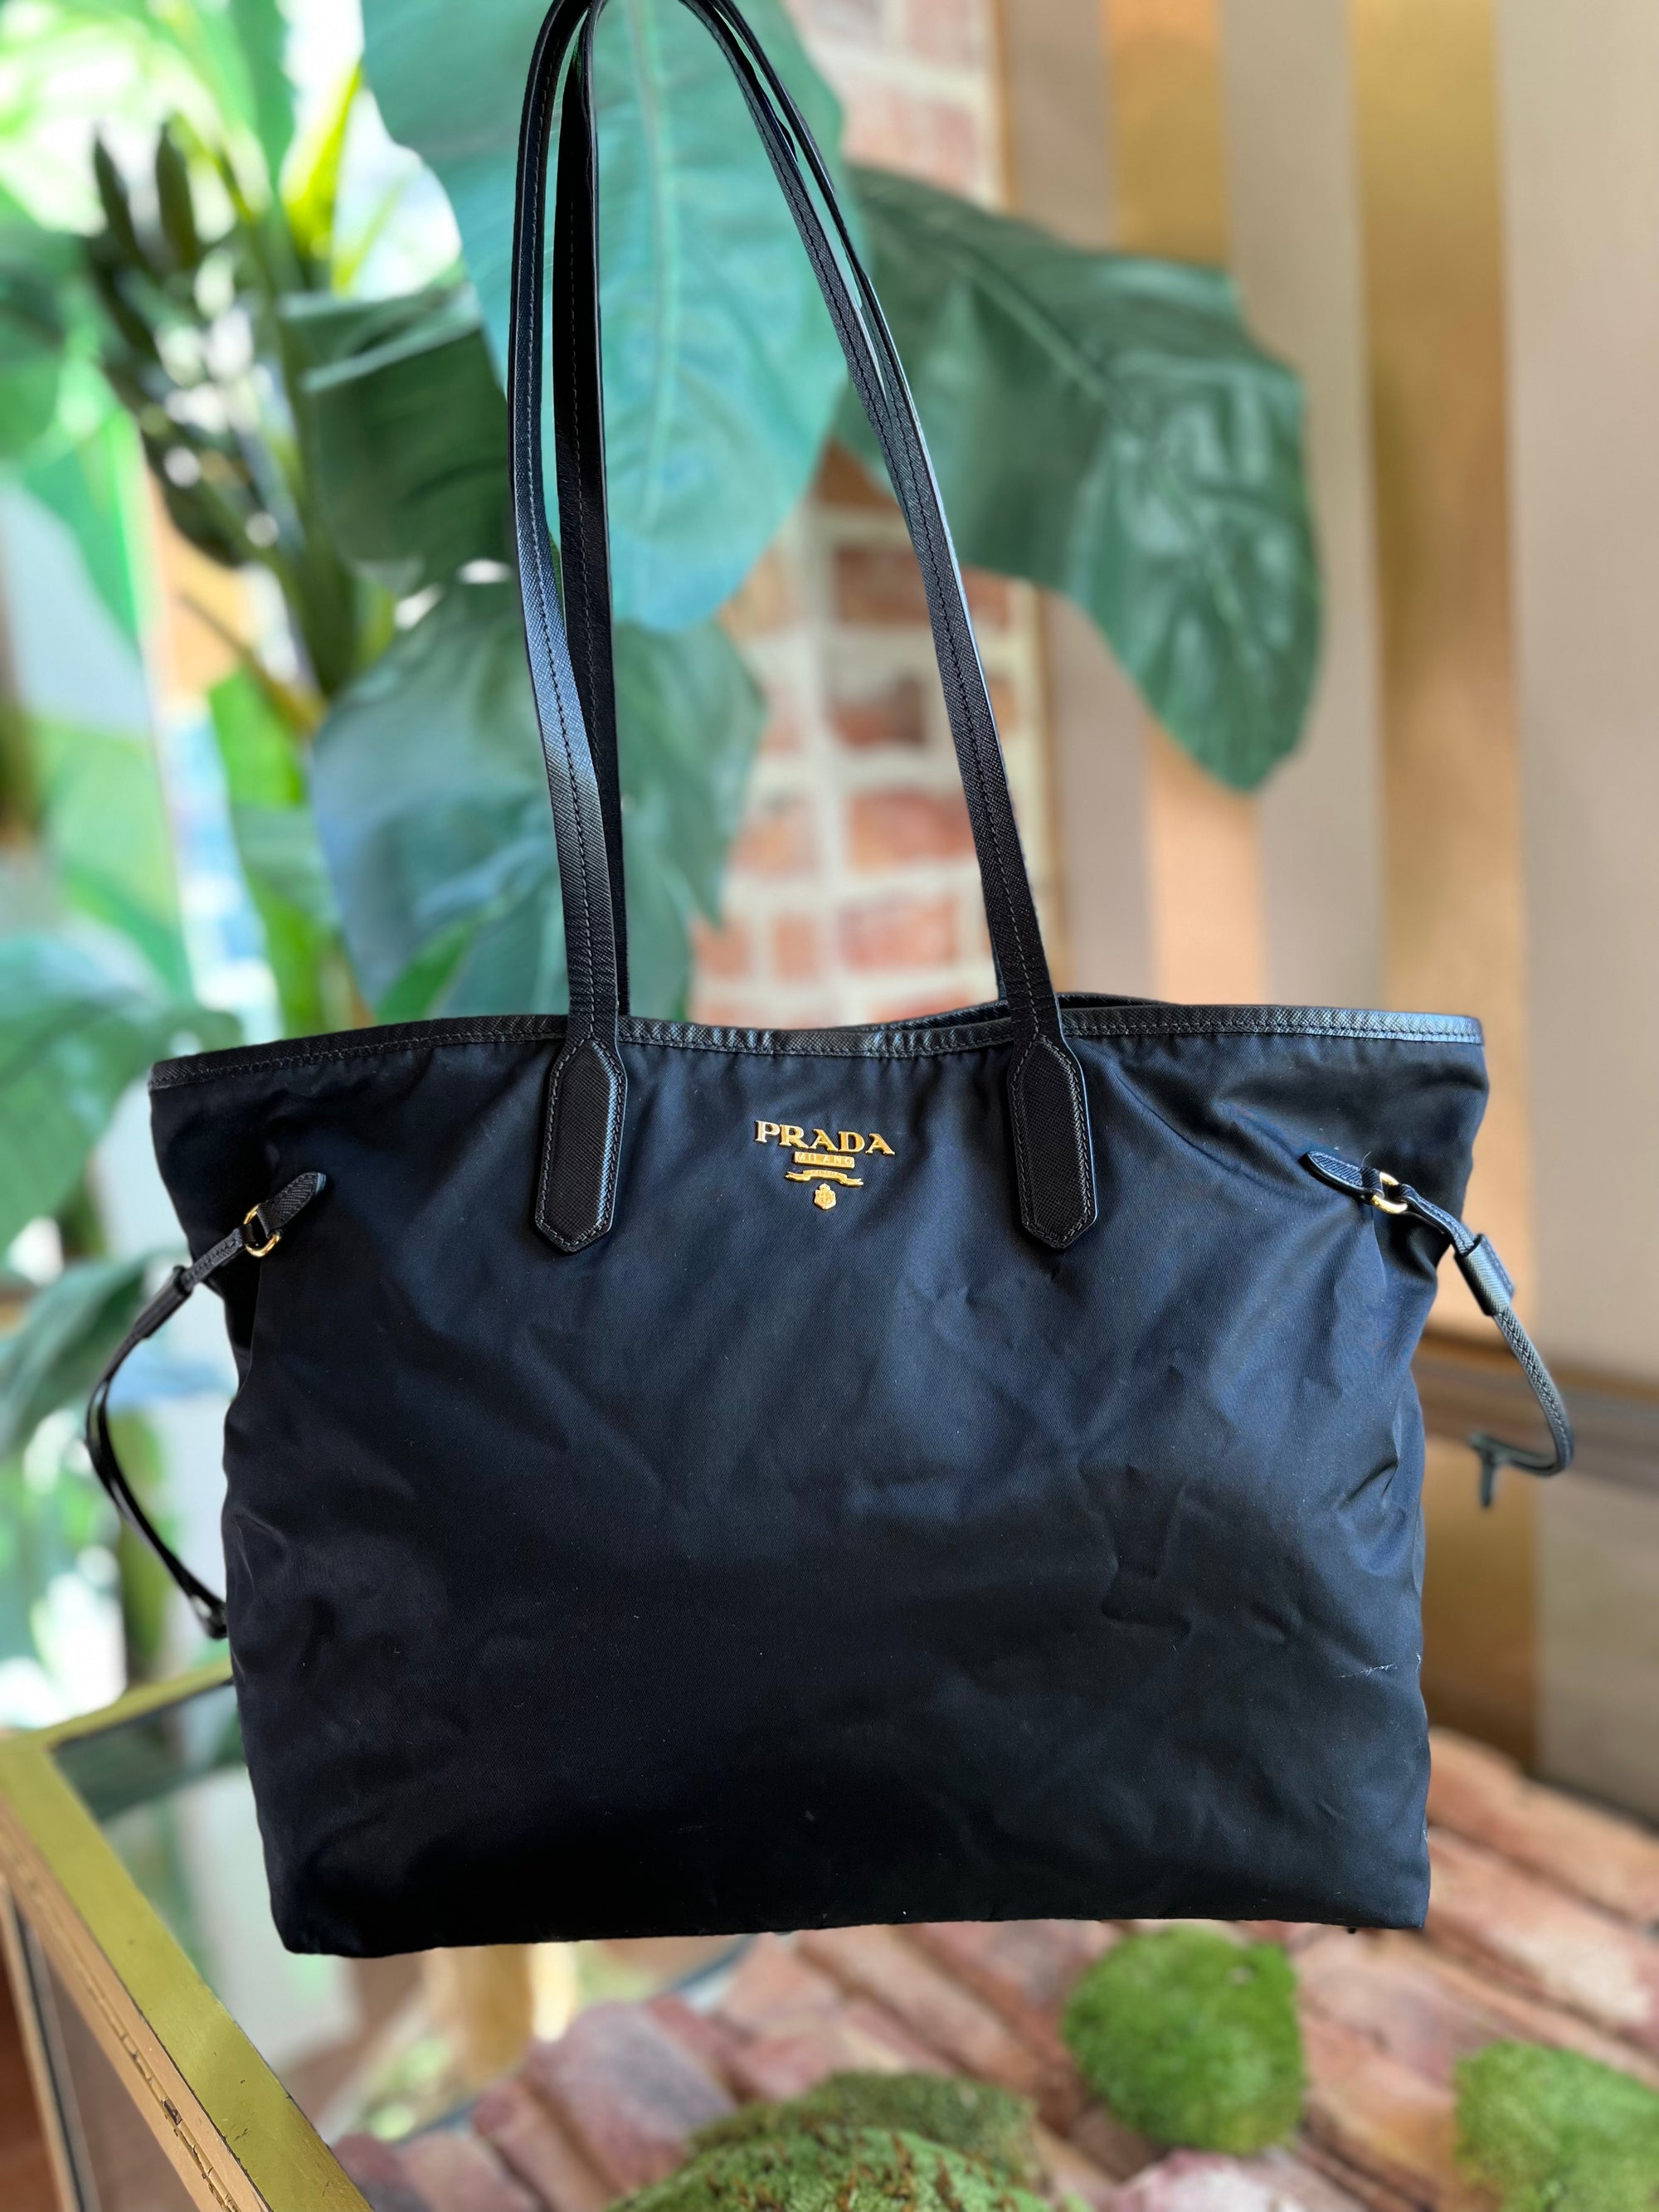 PRADA Black Nylon Tote Bag